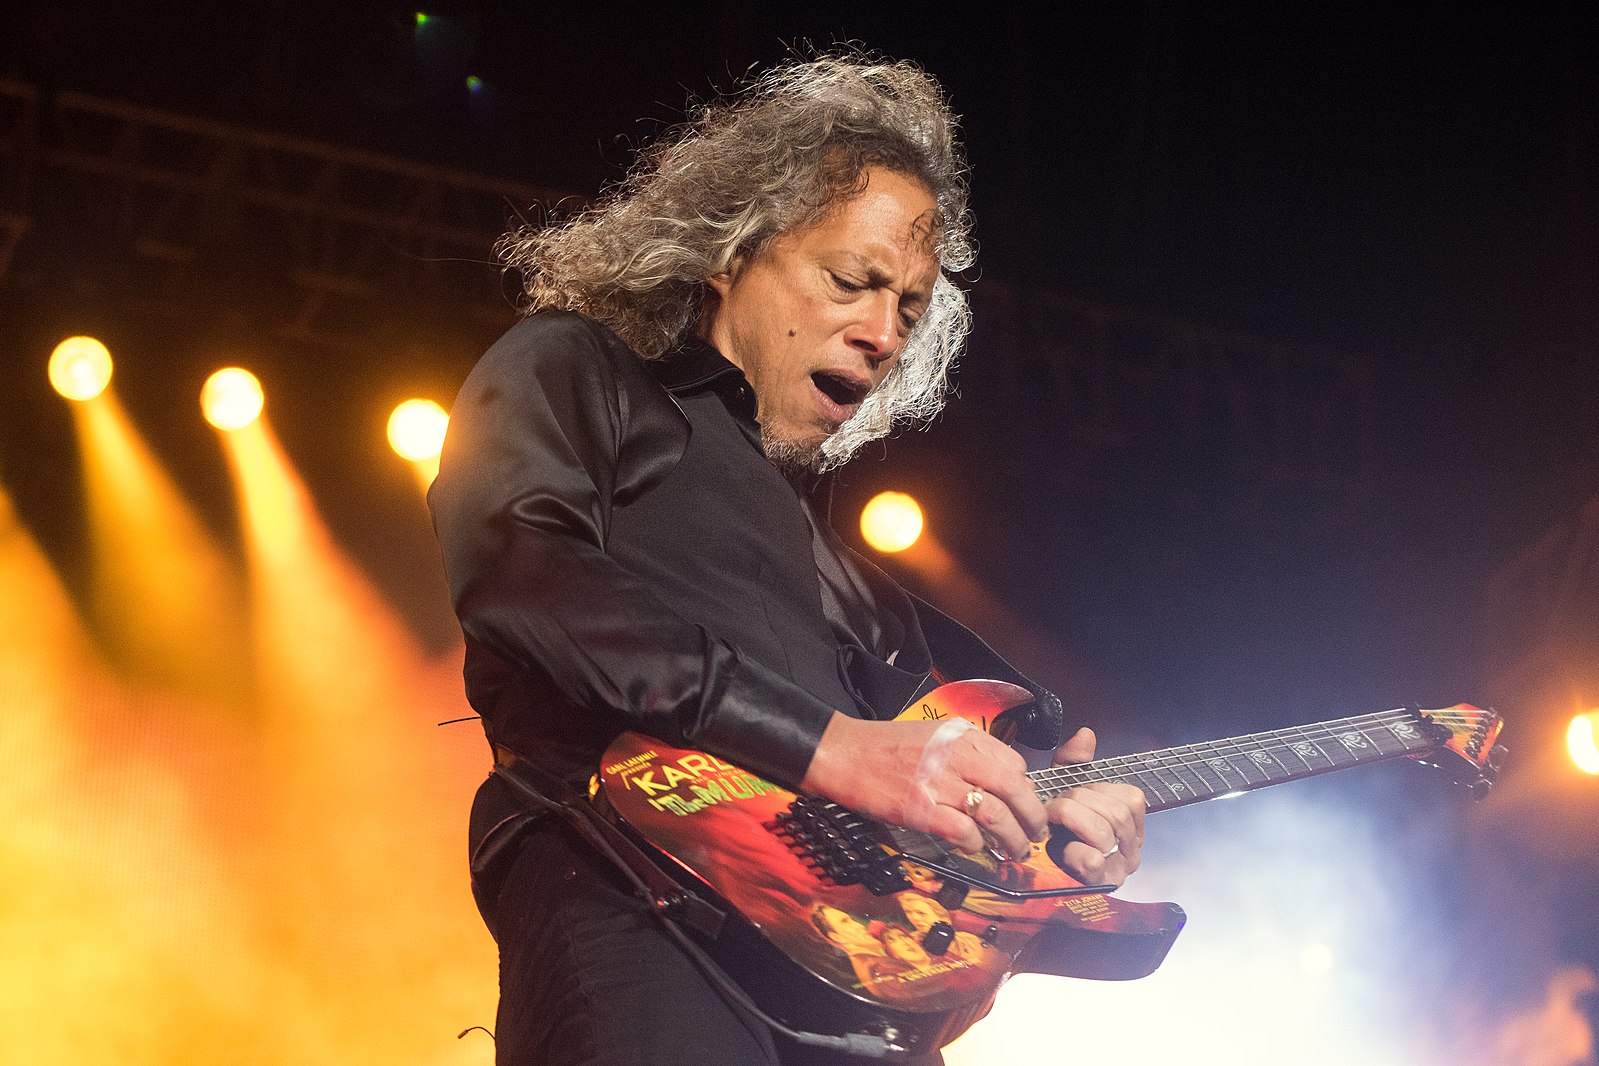 Kirk Hammett dit que c'est son album préféré de Metallica et réfléchit à l'impact de Cliff Burton sur la musique du groupe